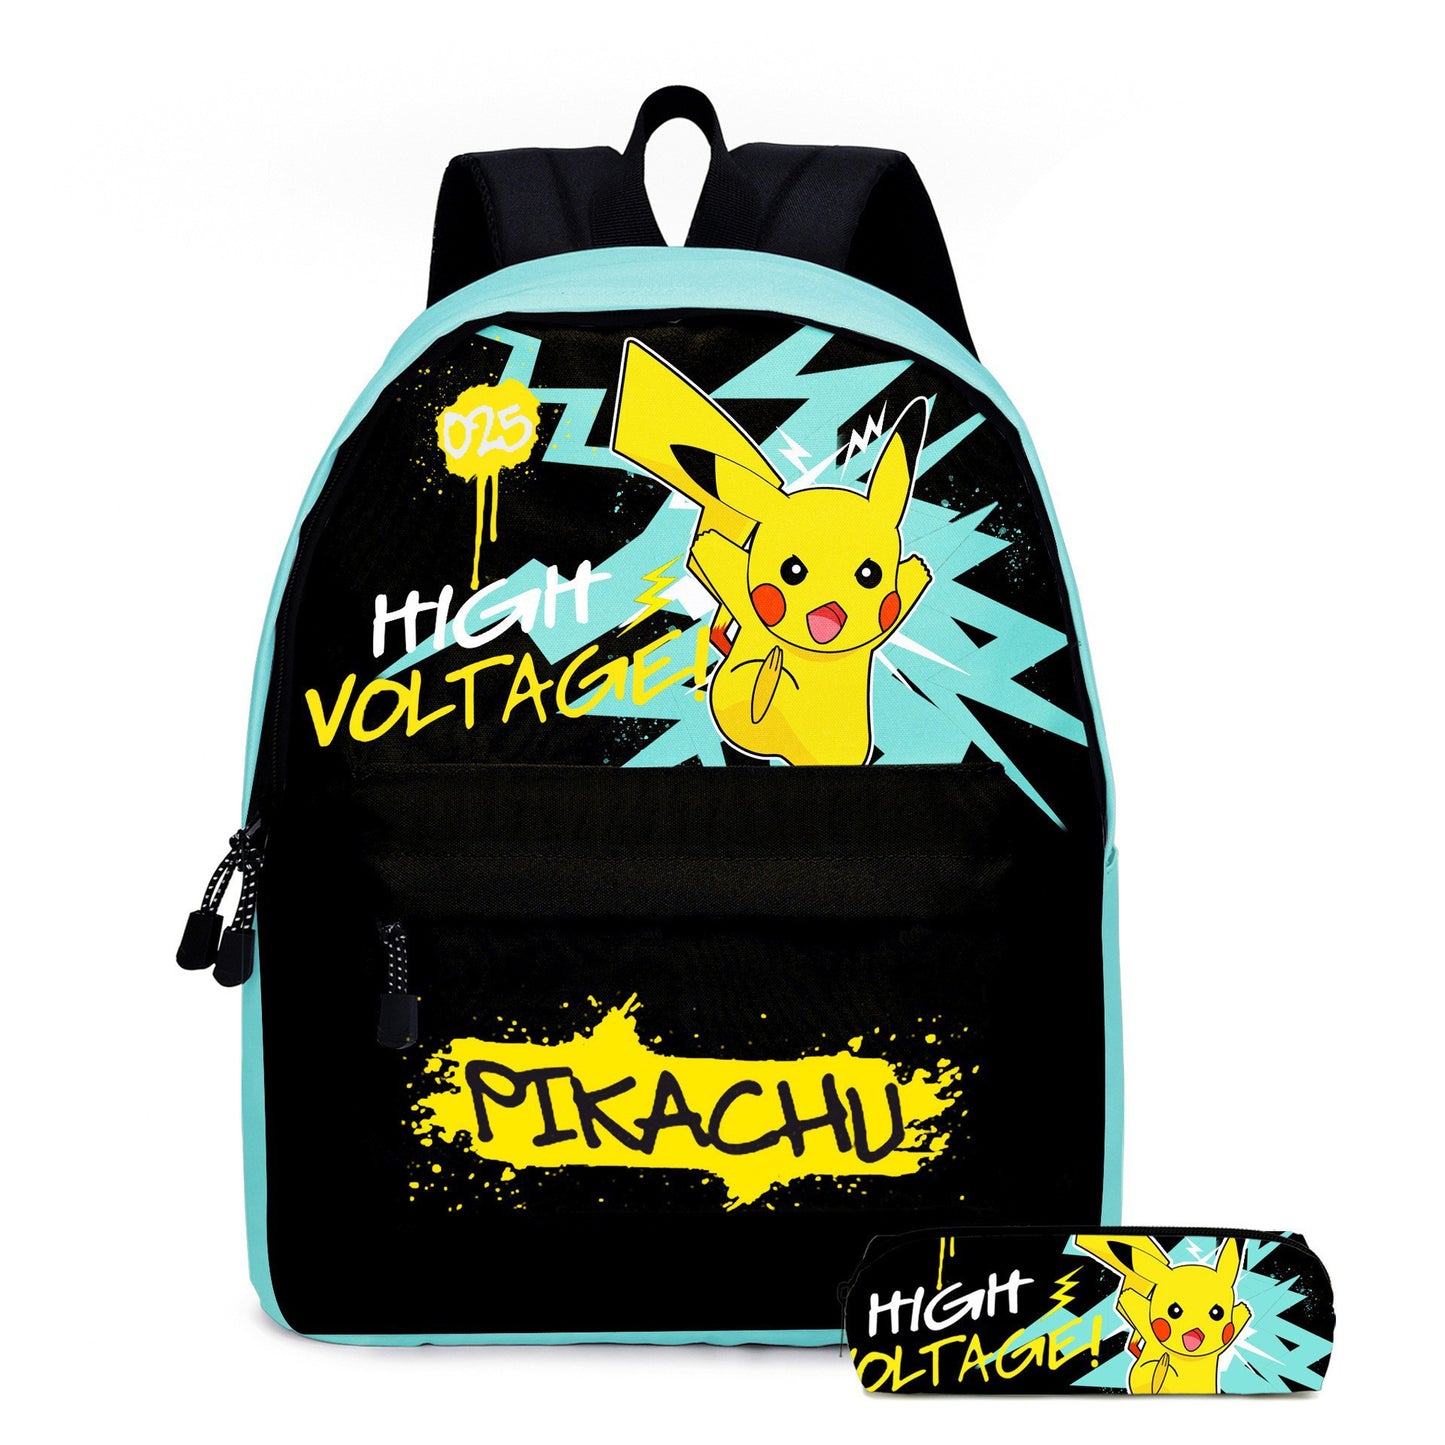 Pokemon Pikachu Children's Backpack Set